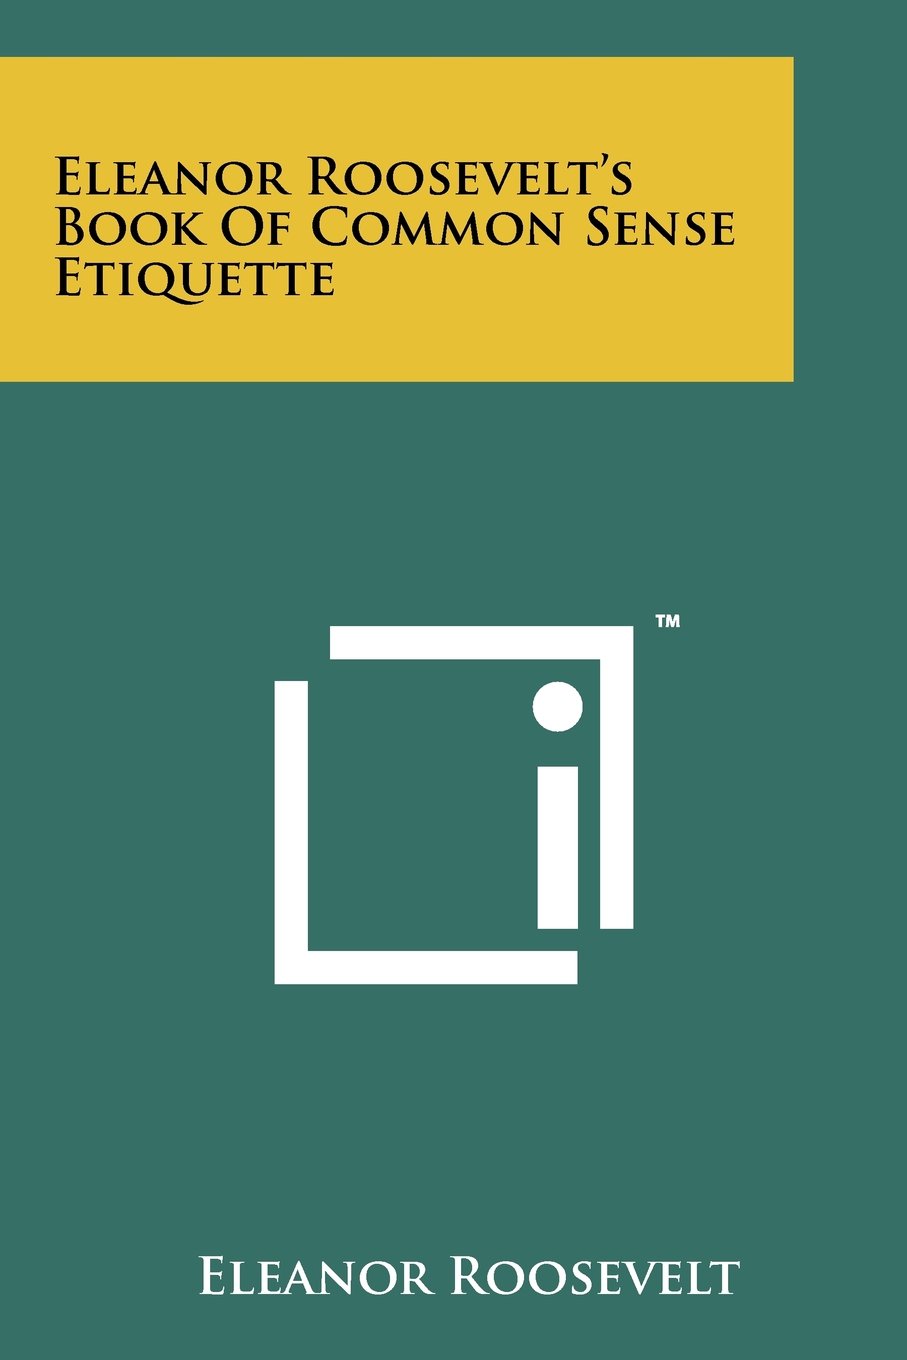 Book of common sense etiquette